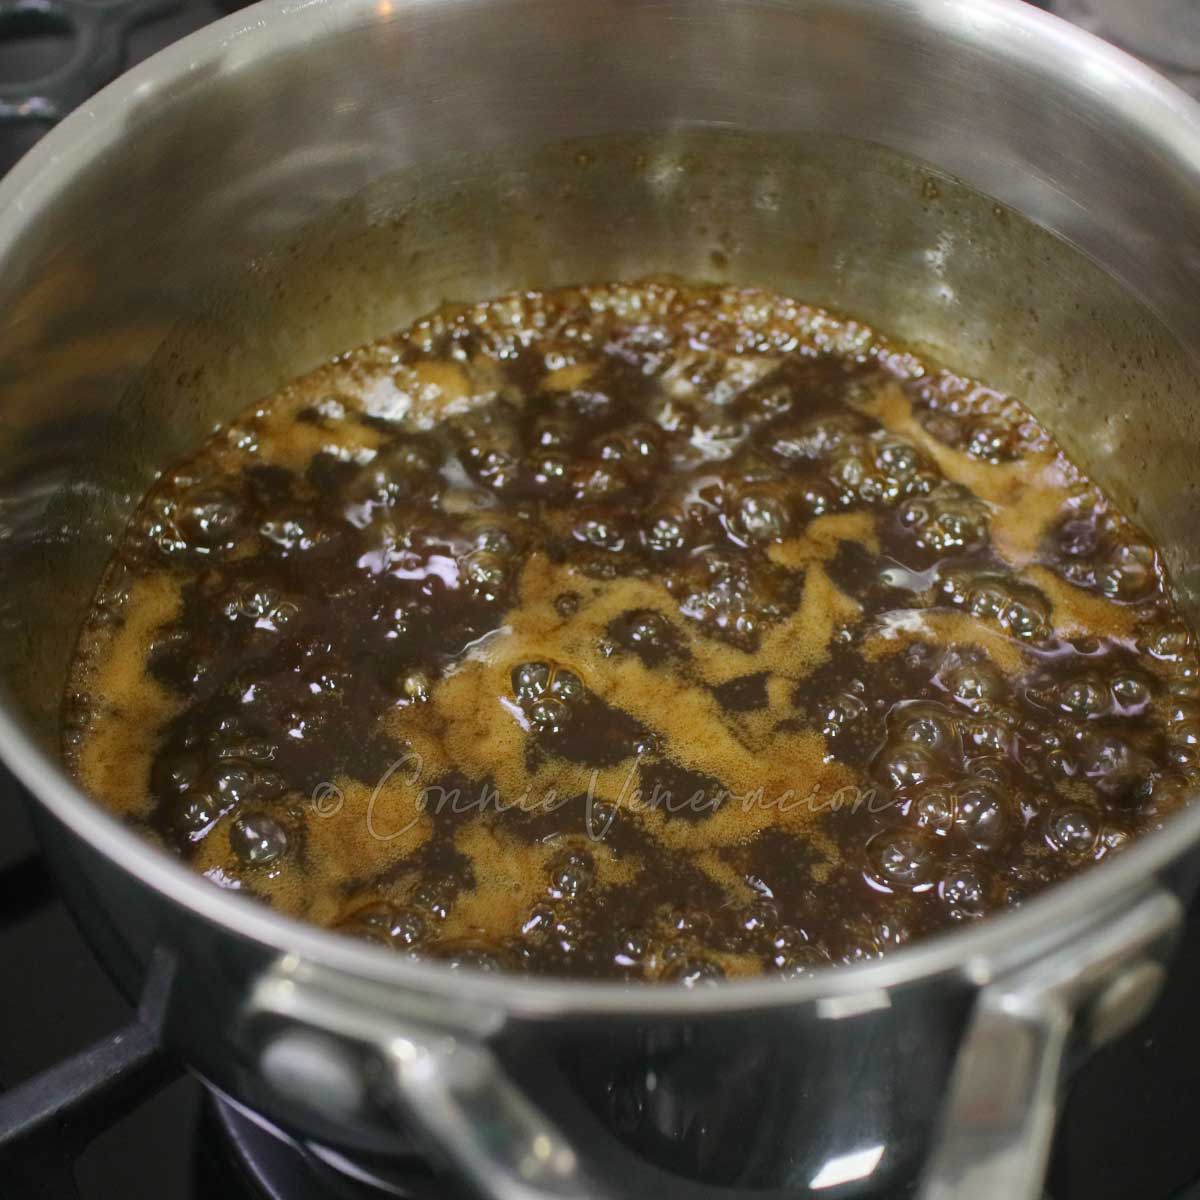 Reducing pork bulgogi marinade to make dipping sauce